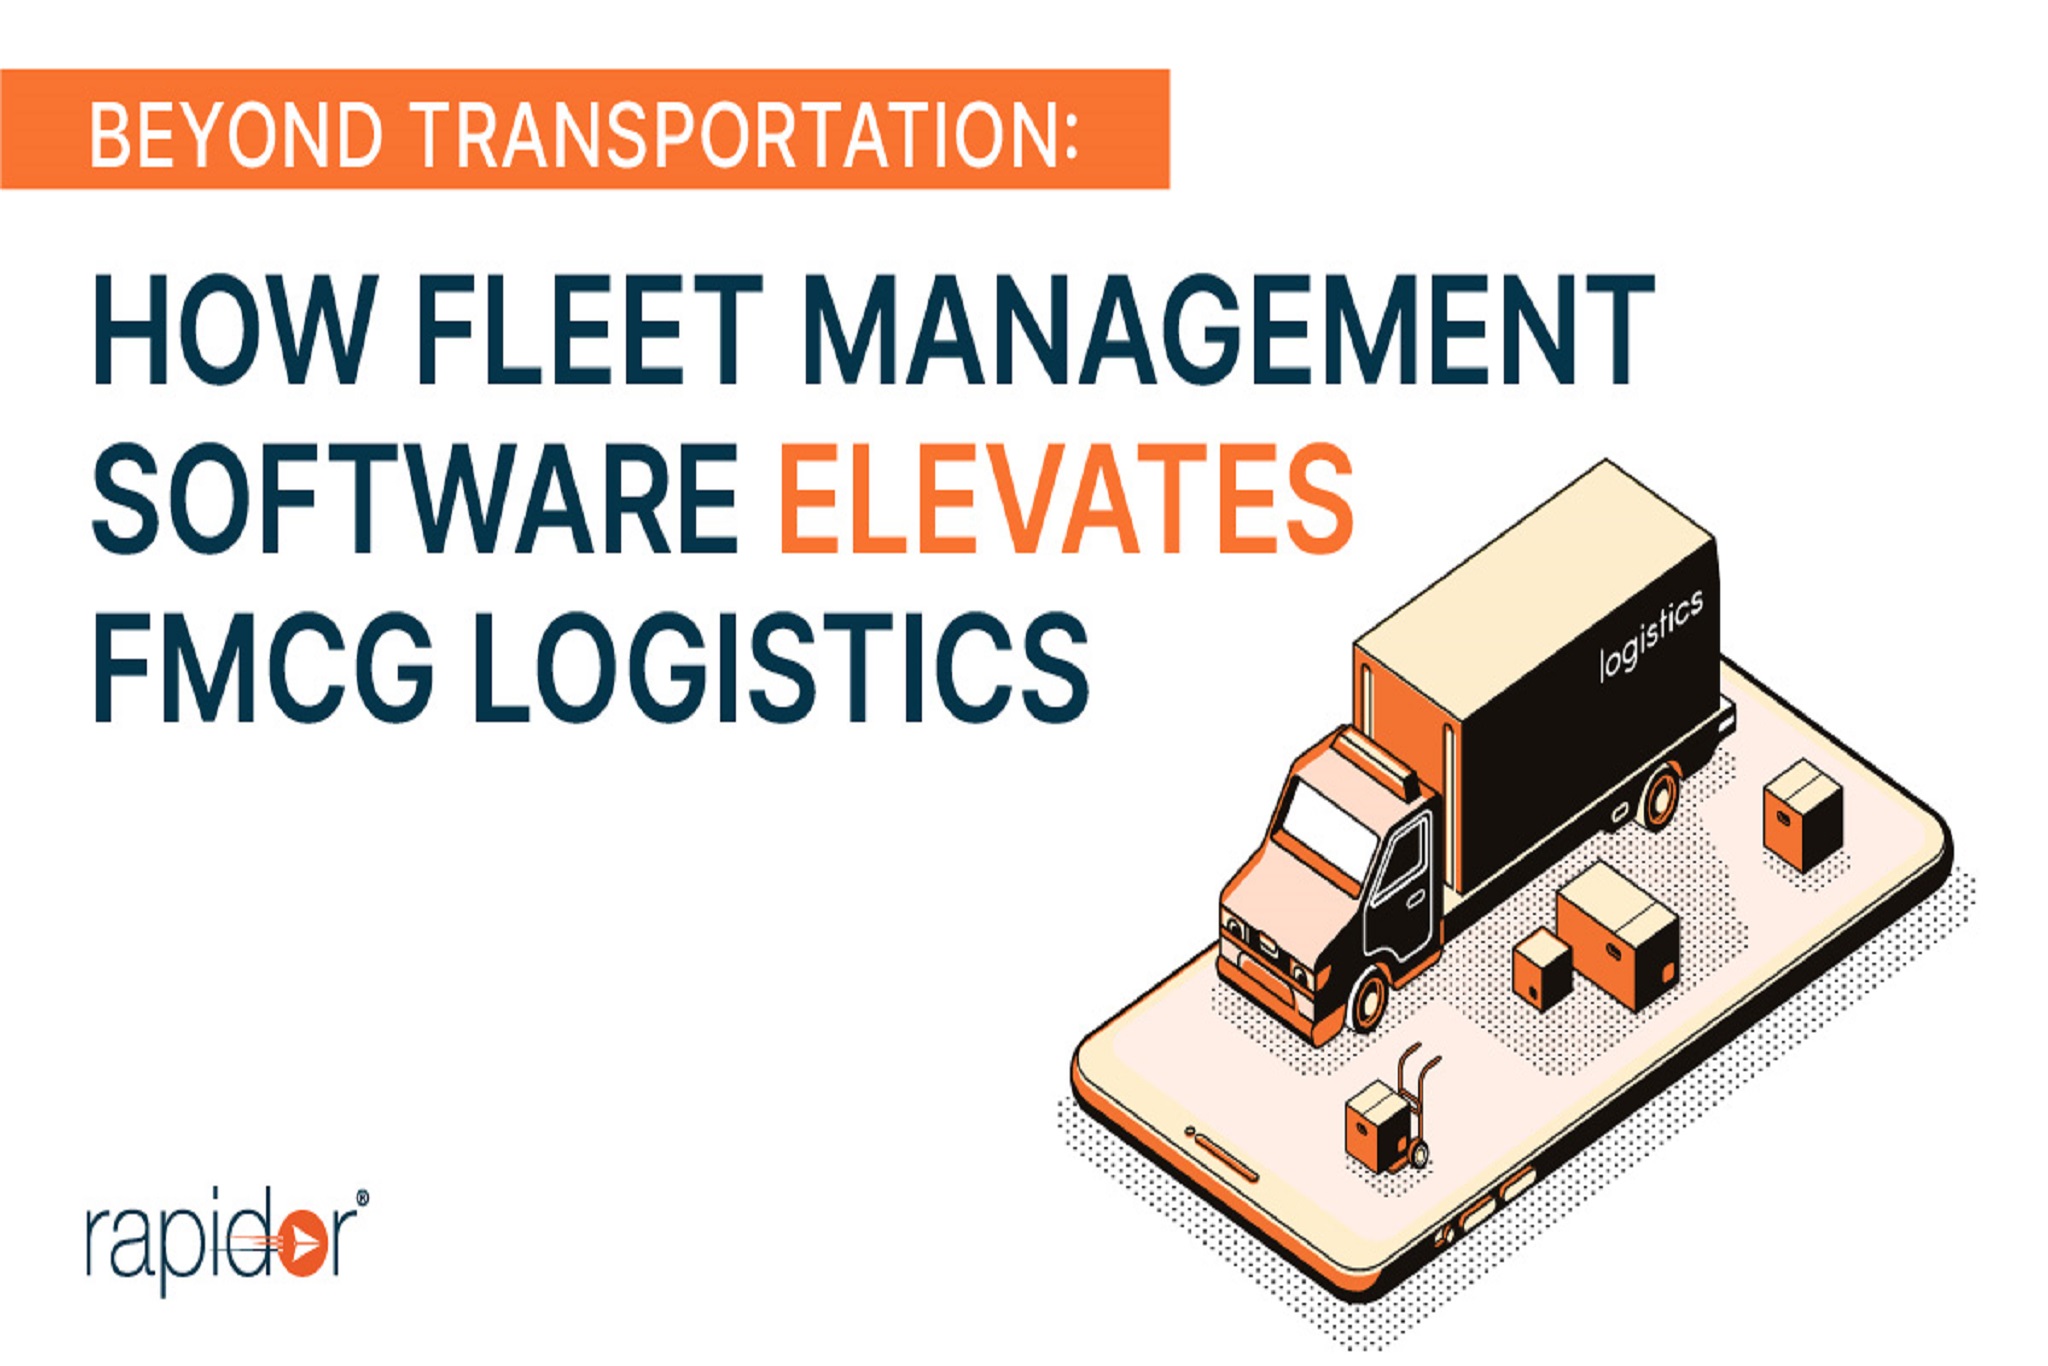 Fleet Management Software For FMCG Logistics